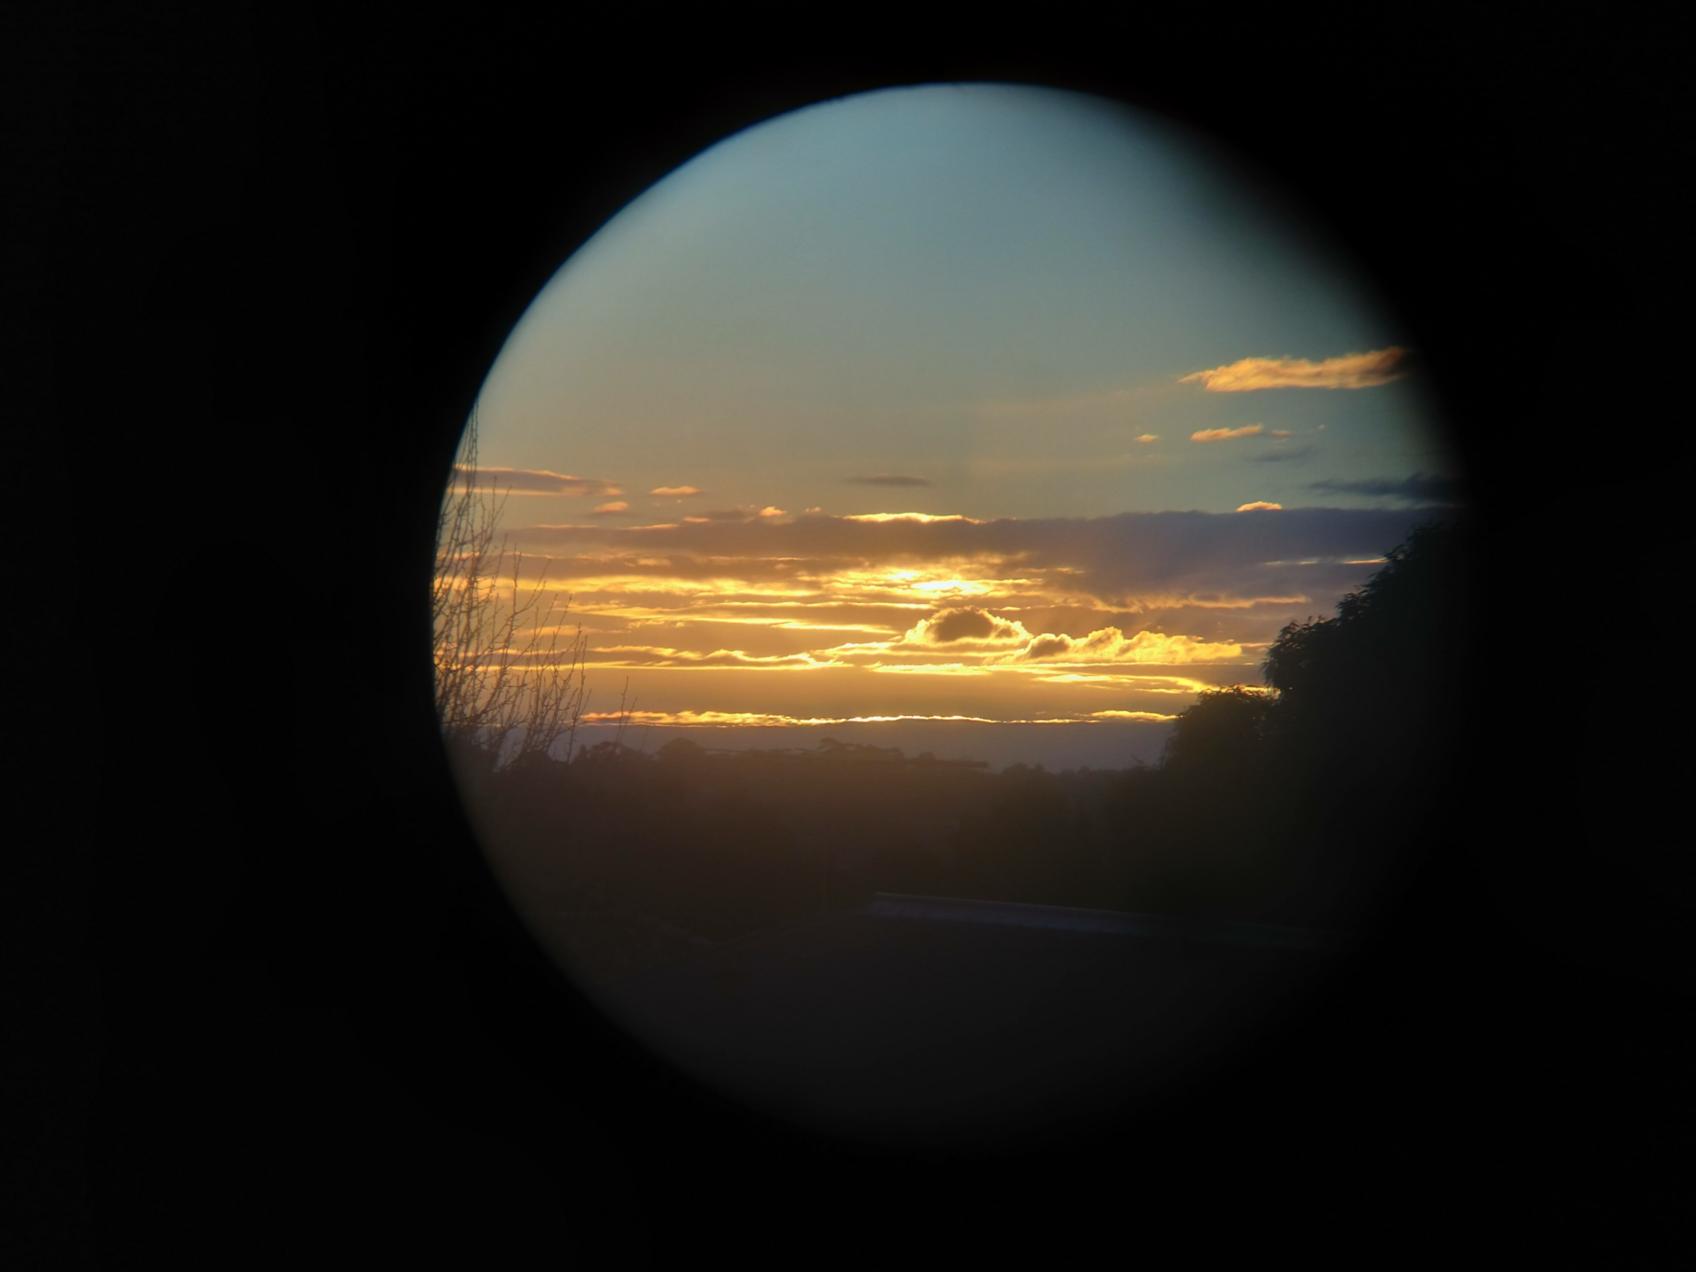 Sonnenaufgang durchs Teleskop gesehen (c) Photo by Arnold Zhou on Unsplash